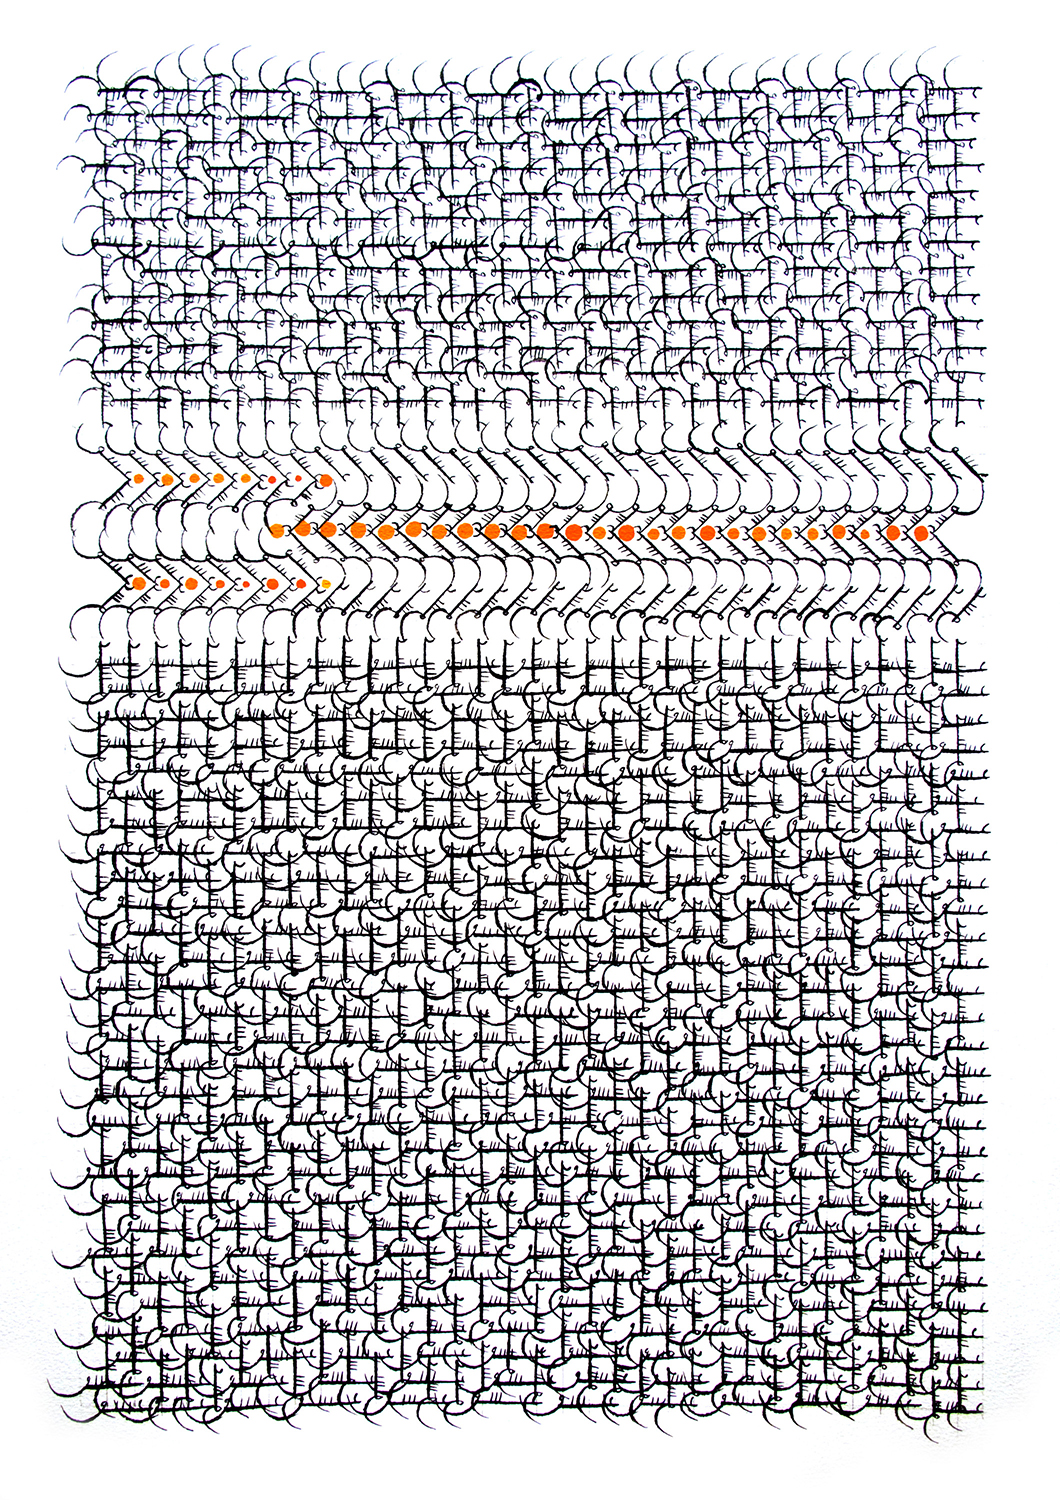 الشبكة 30، 29 1/2×20 1/2 بوصة (74.93 × 52.07 سم) يتم شراؤها مع أموال مقدمة من فن الشرق الأوسط: معاصر مع أموال إضافية مقدمة من كاترين بينكايم وباربارا تيمر، 2013.